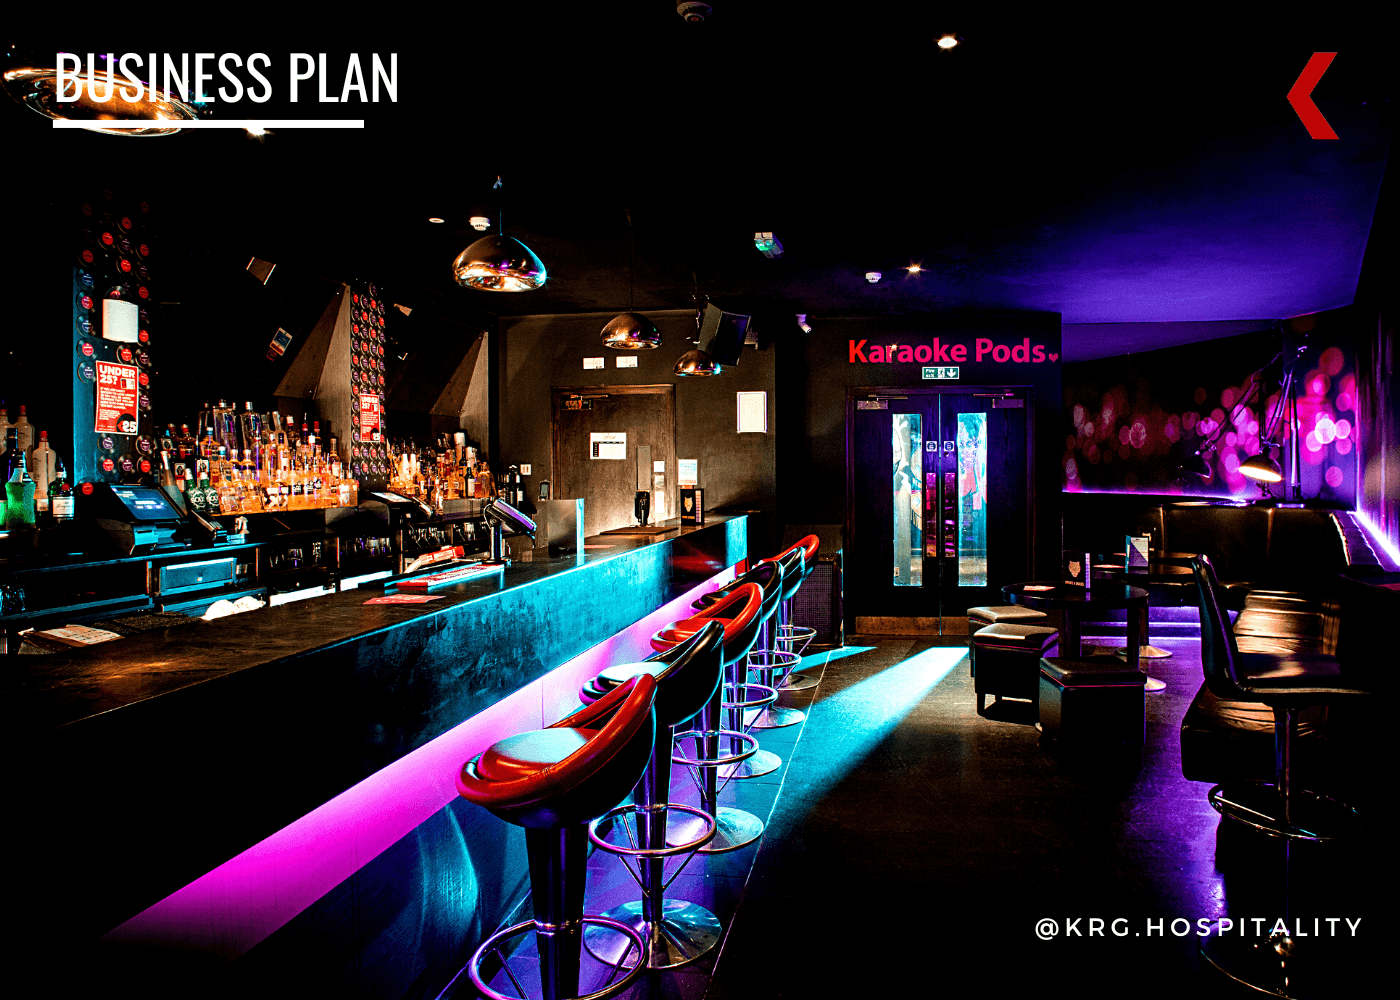 Bar Pub Brewery Nightclub Club Nightlife Business Plan